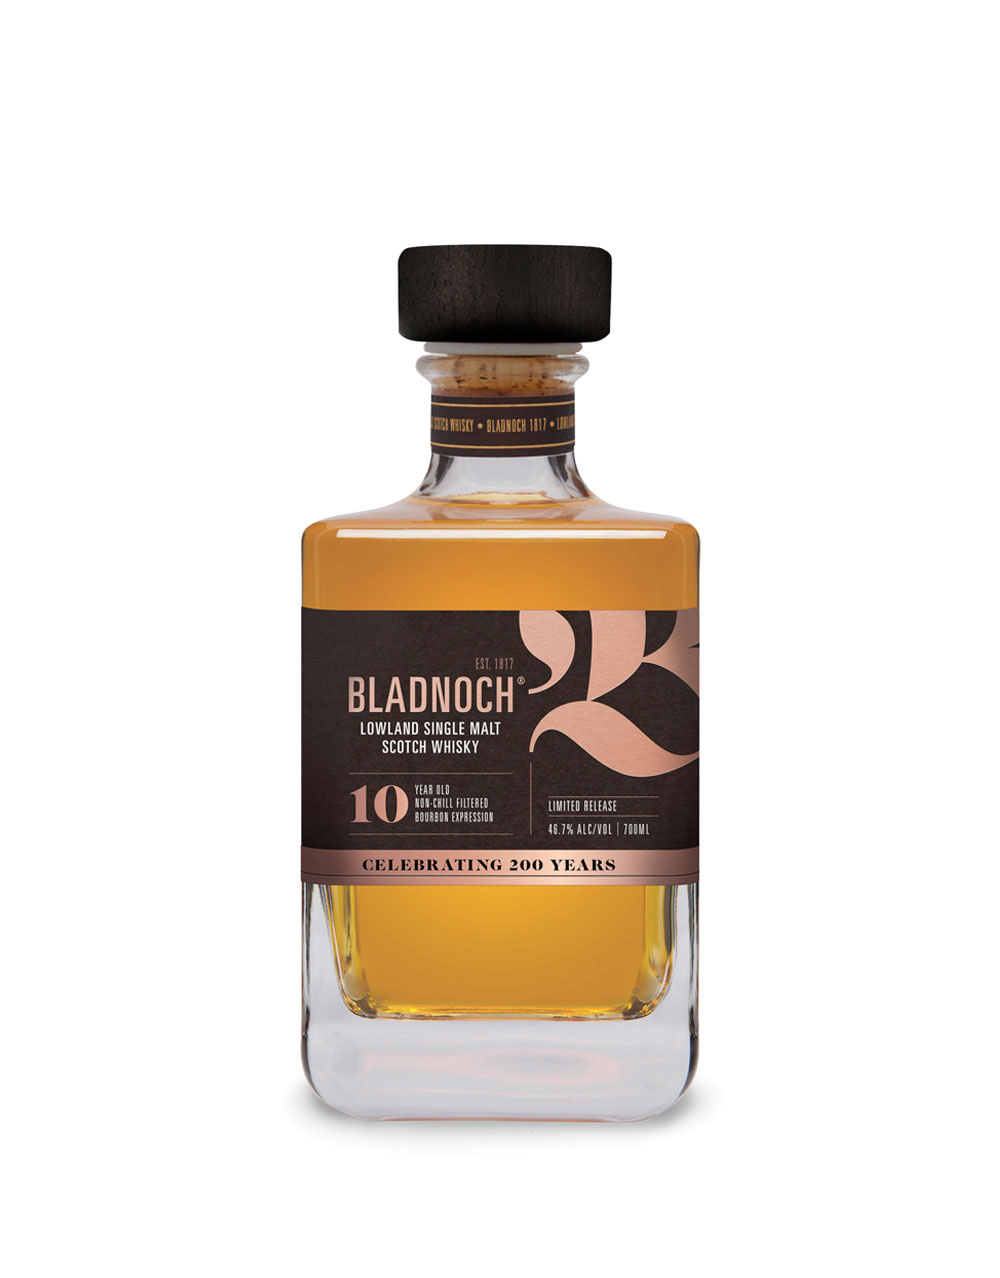 Bladnoch 10 Year Old Single Malt Scotch